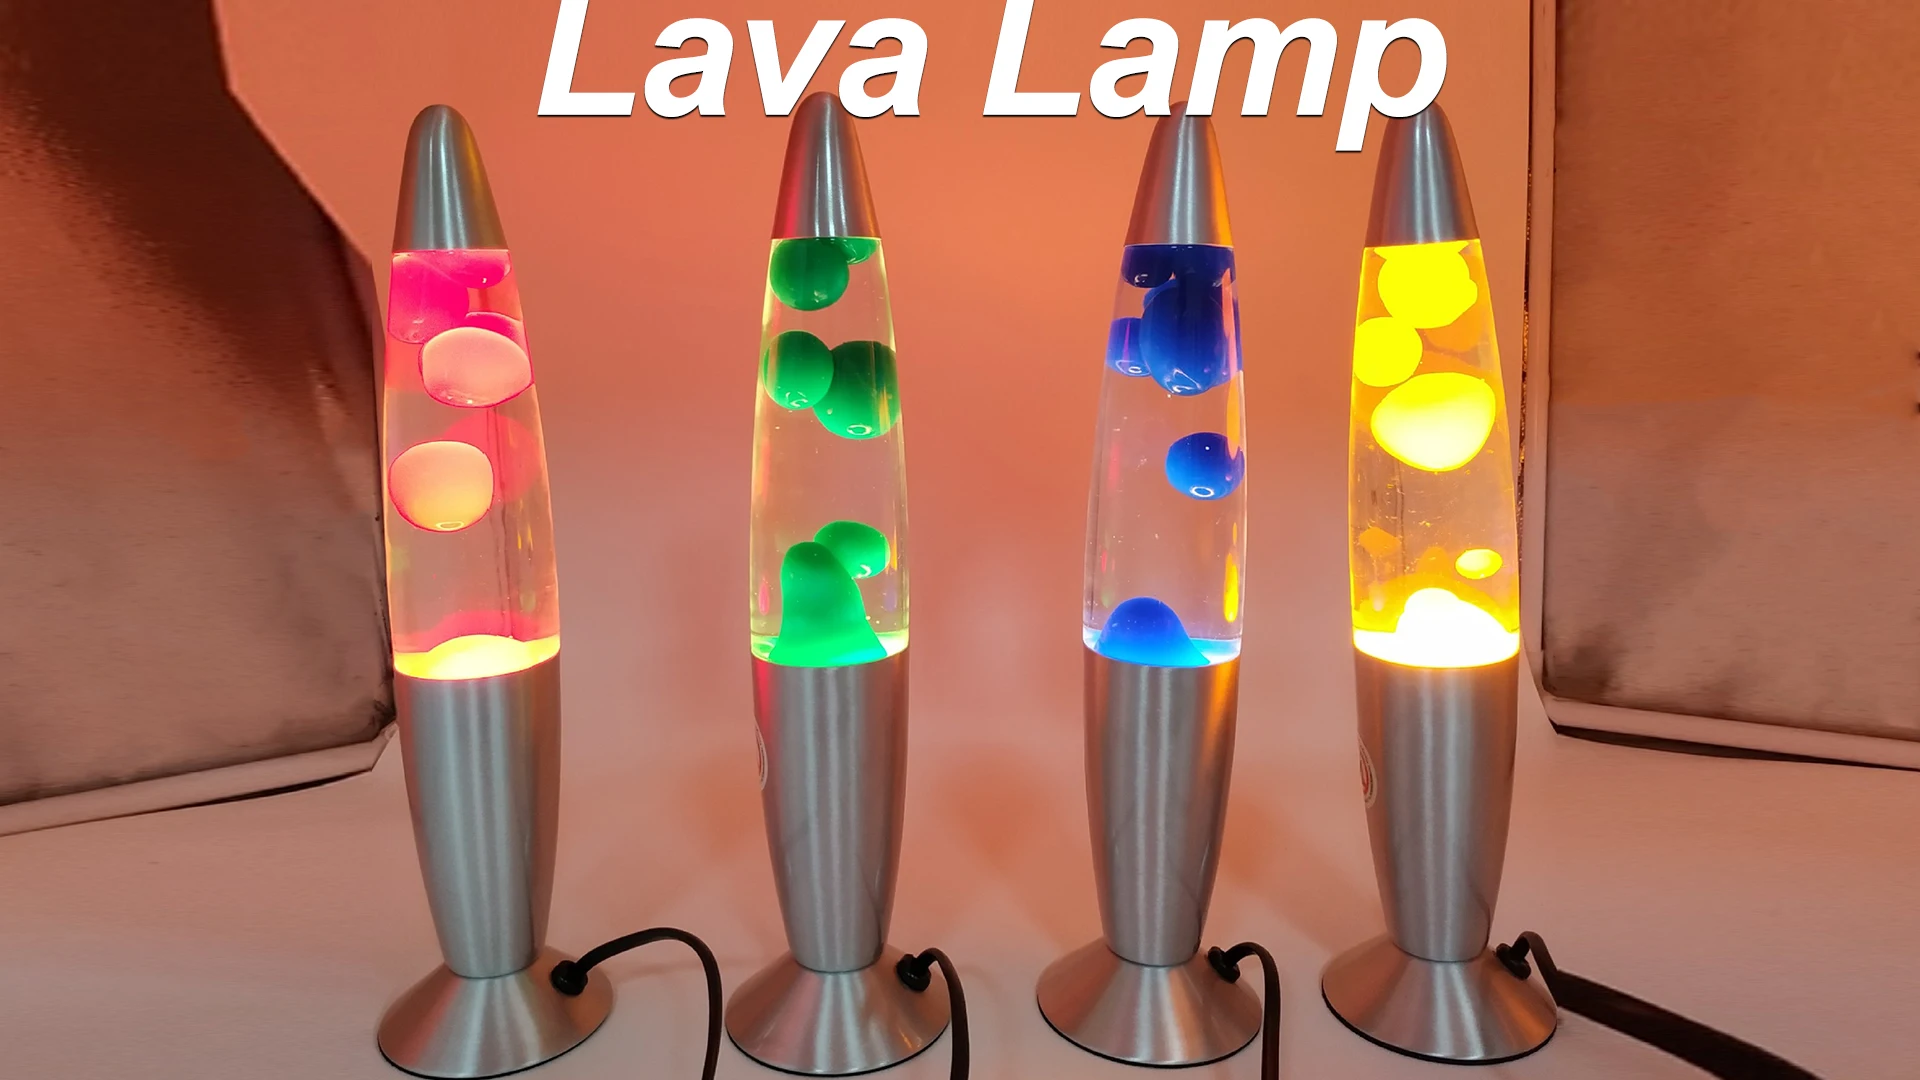 Blind flåde Tak for din hjælp Source Custom Color Lava Lamp, Aluminum Base Lampara De Lava Small Lavalampe  on m.alibaba.com